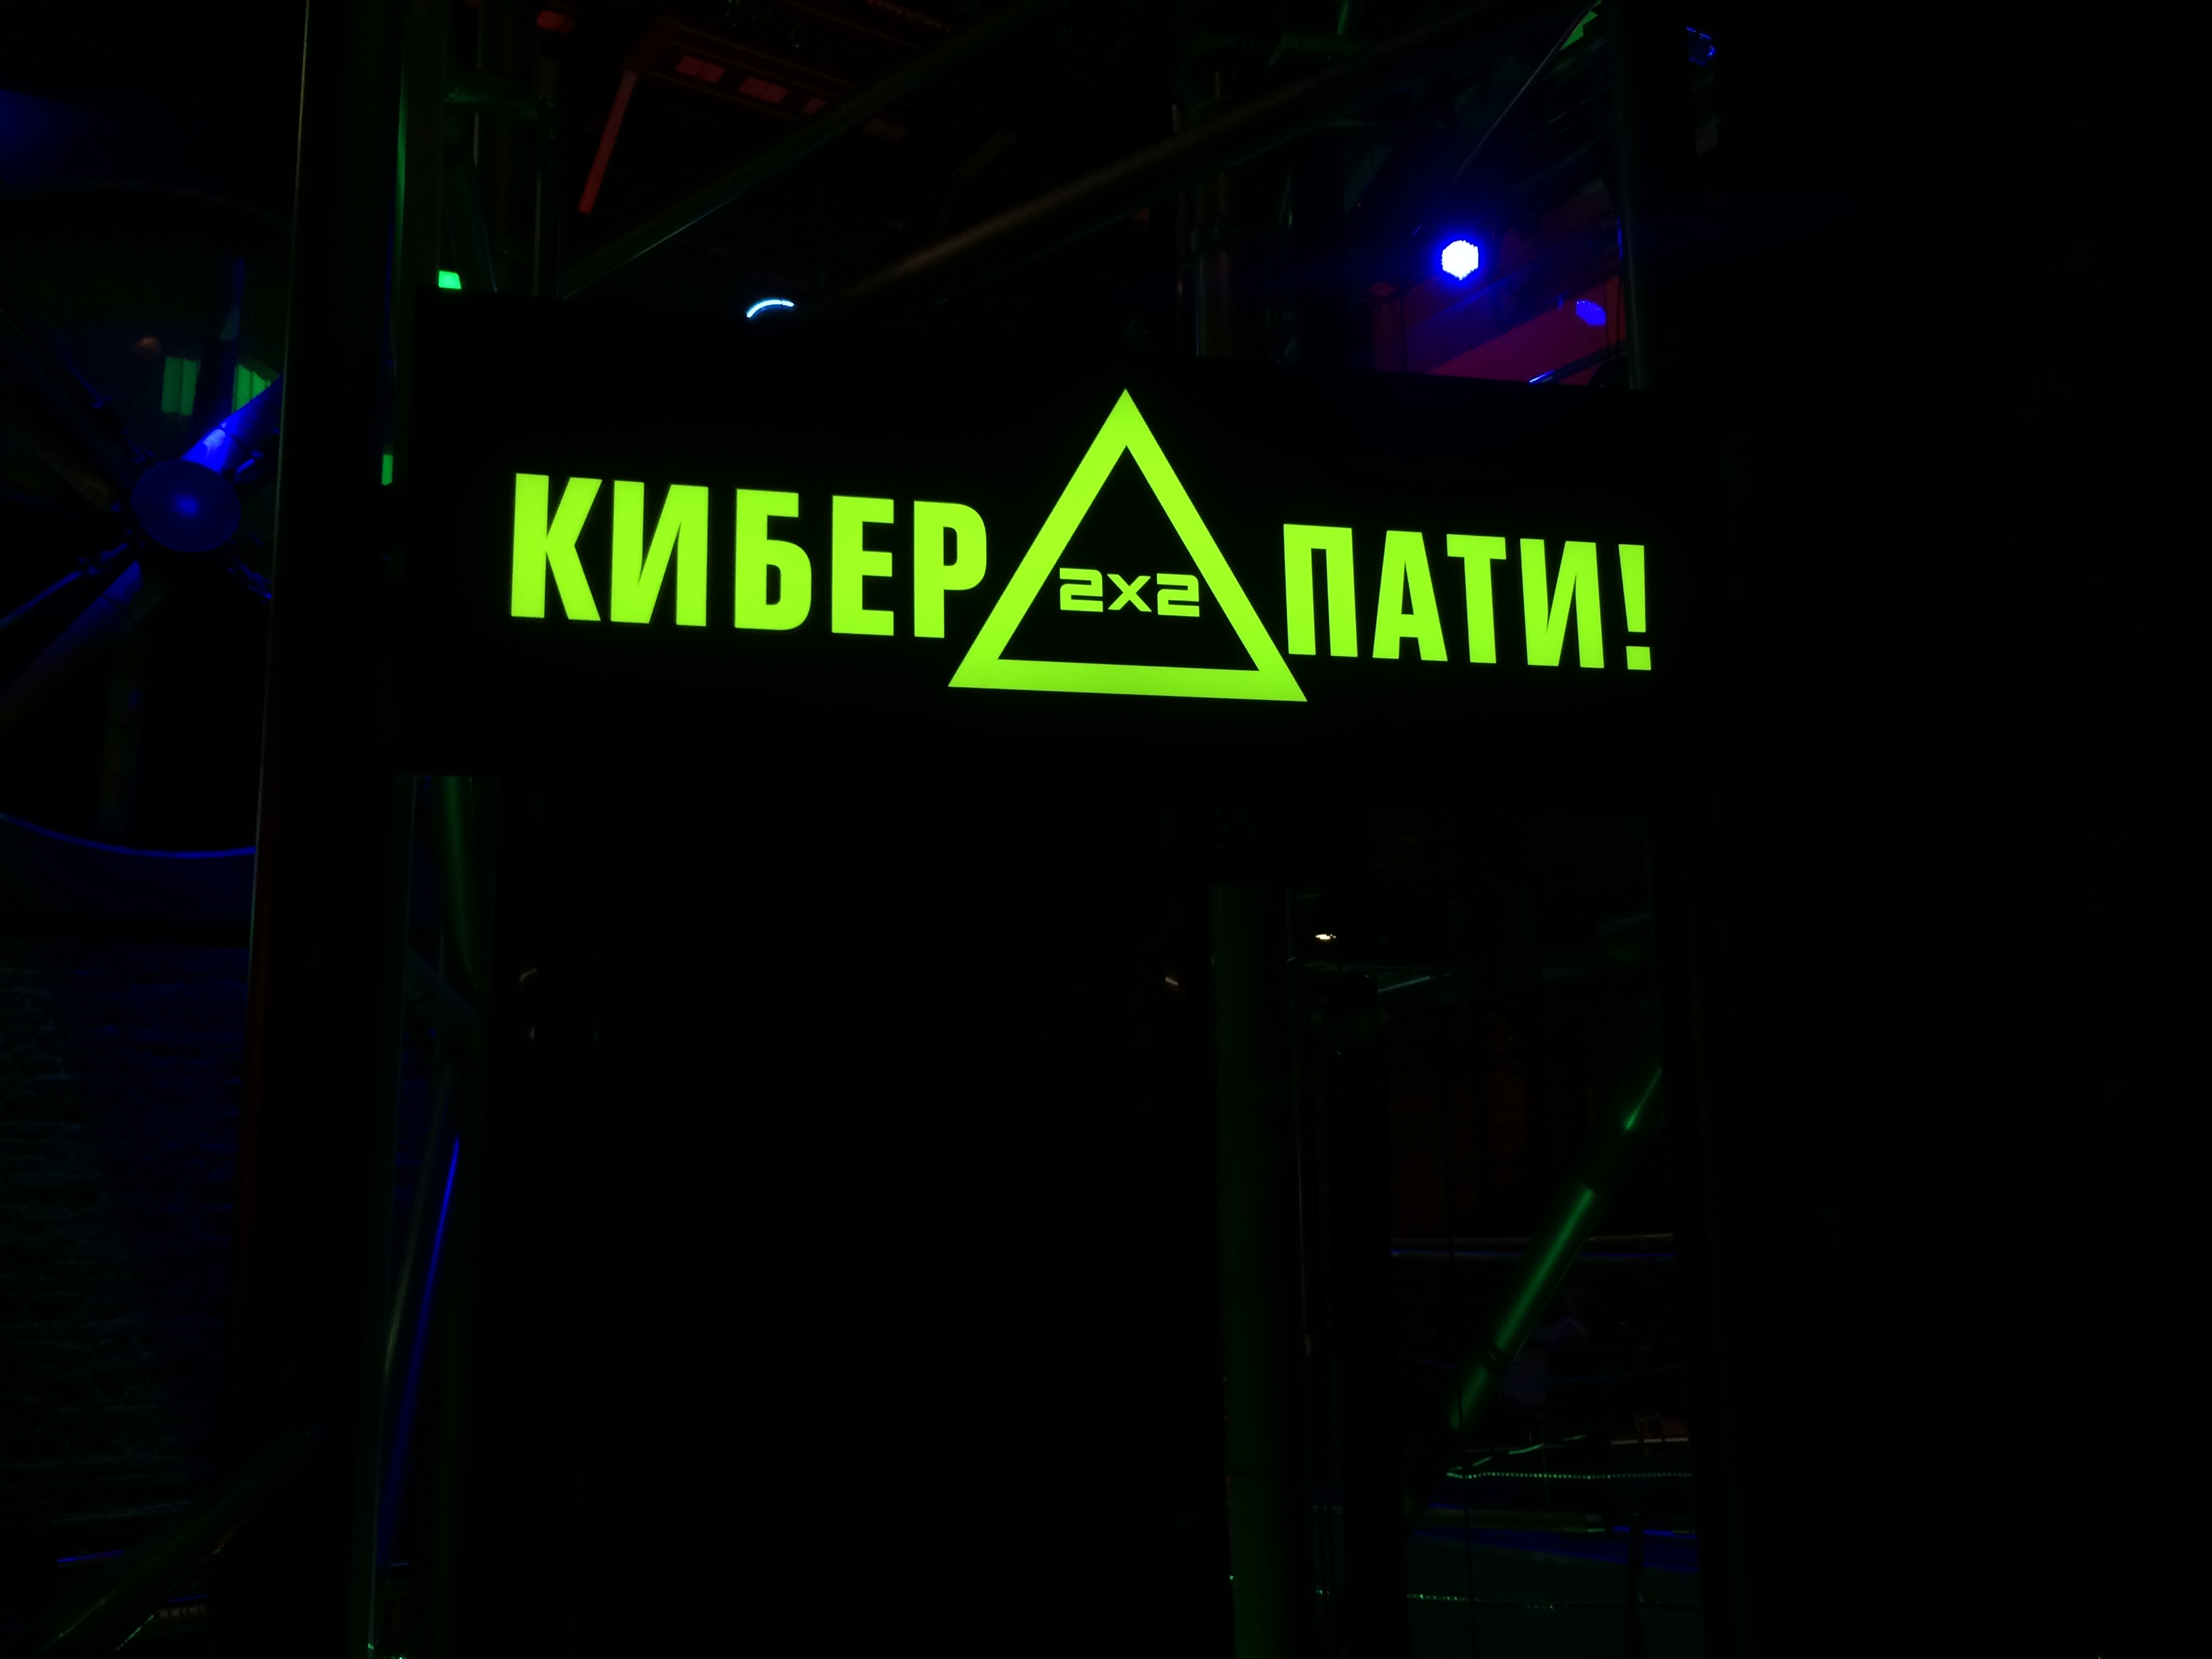 Кибер пати от канала 2х2 на Павелецкой, кинотеатр 5 звезд